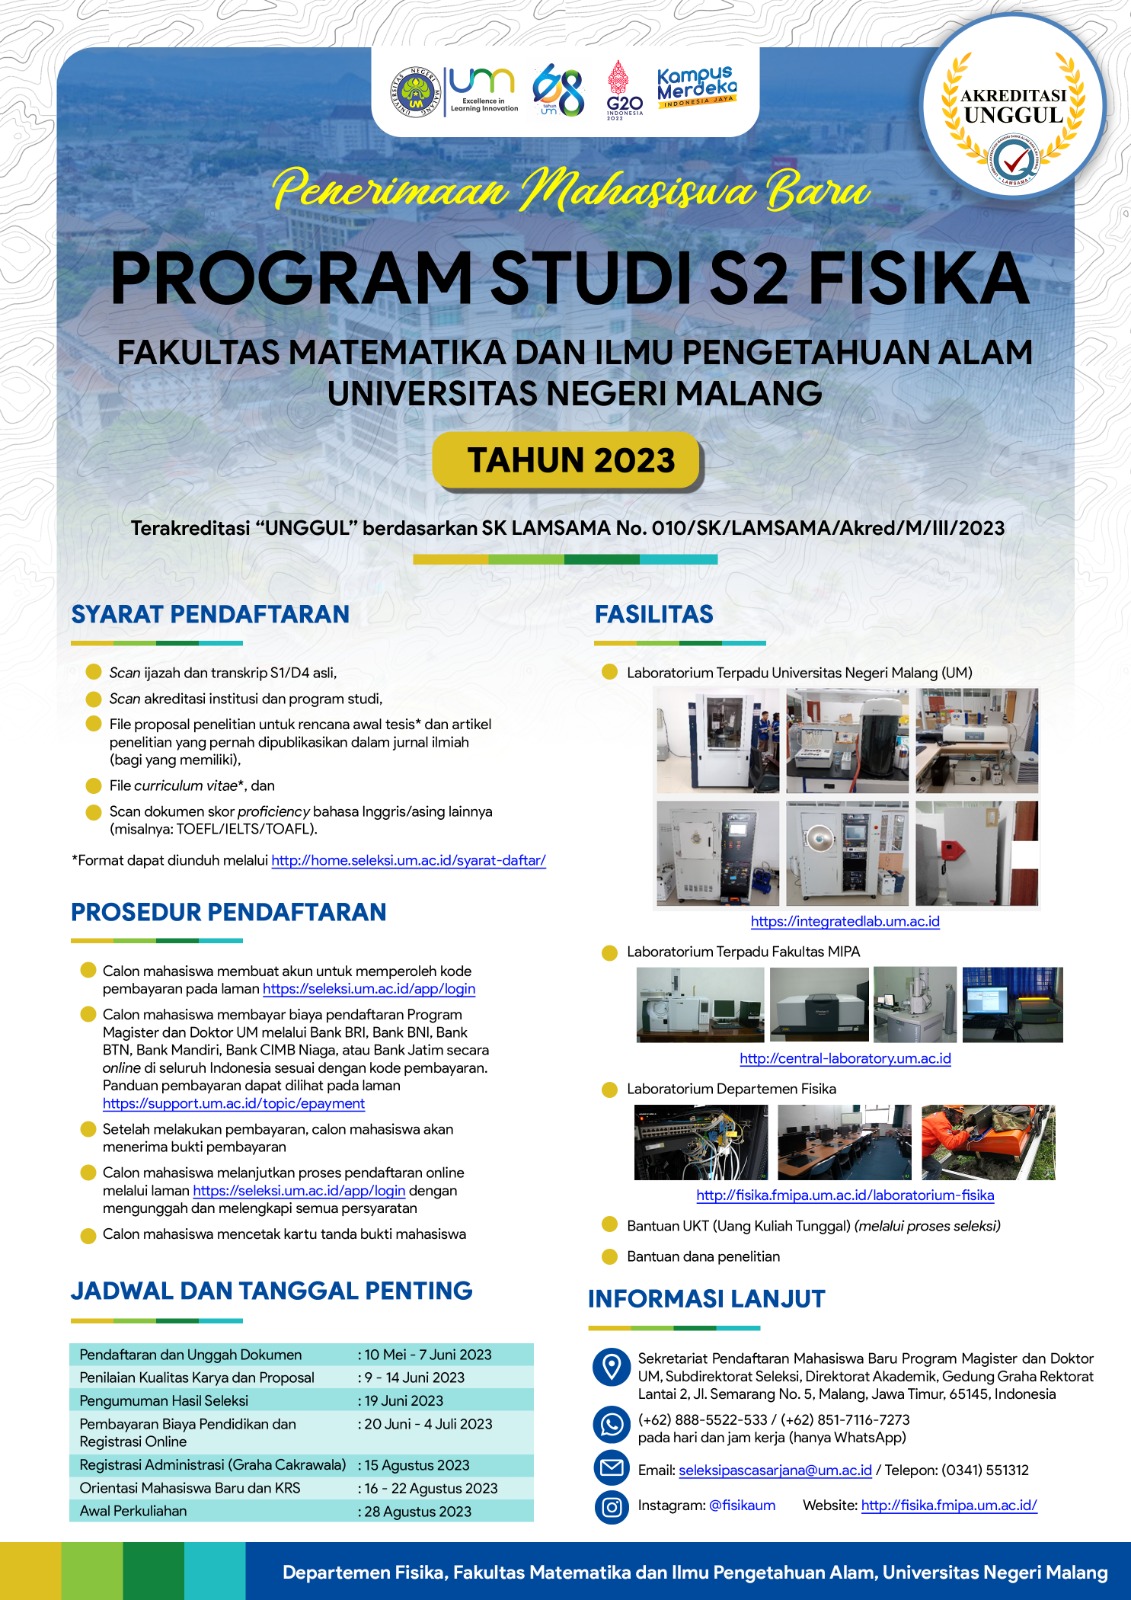 Pengumuman Penerimaan Mahasiswa Baru Program Sudi S2 Fisika FMIPA Universitas Negeri Malang Tahun 2023